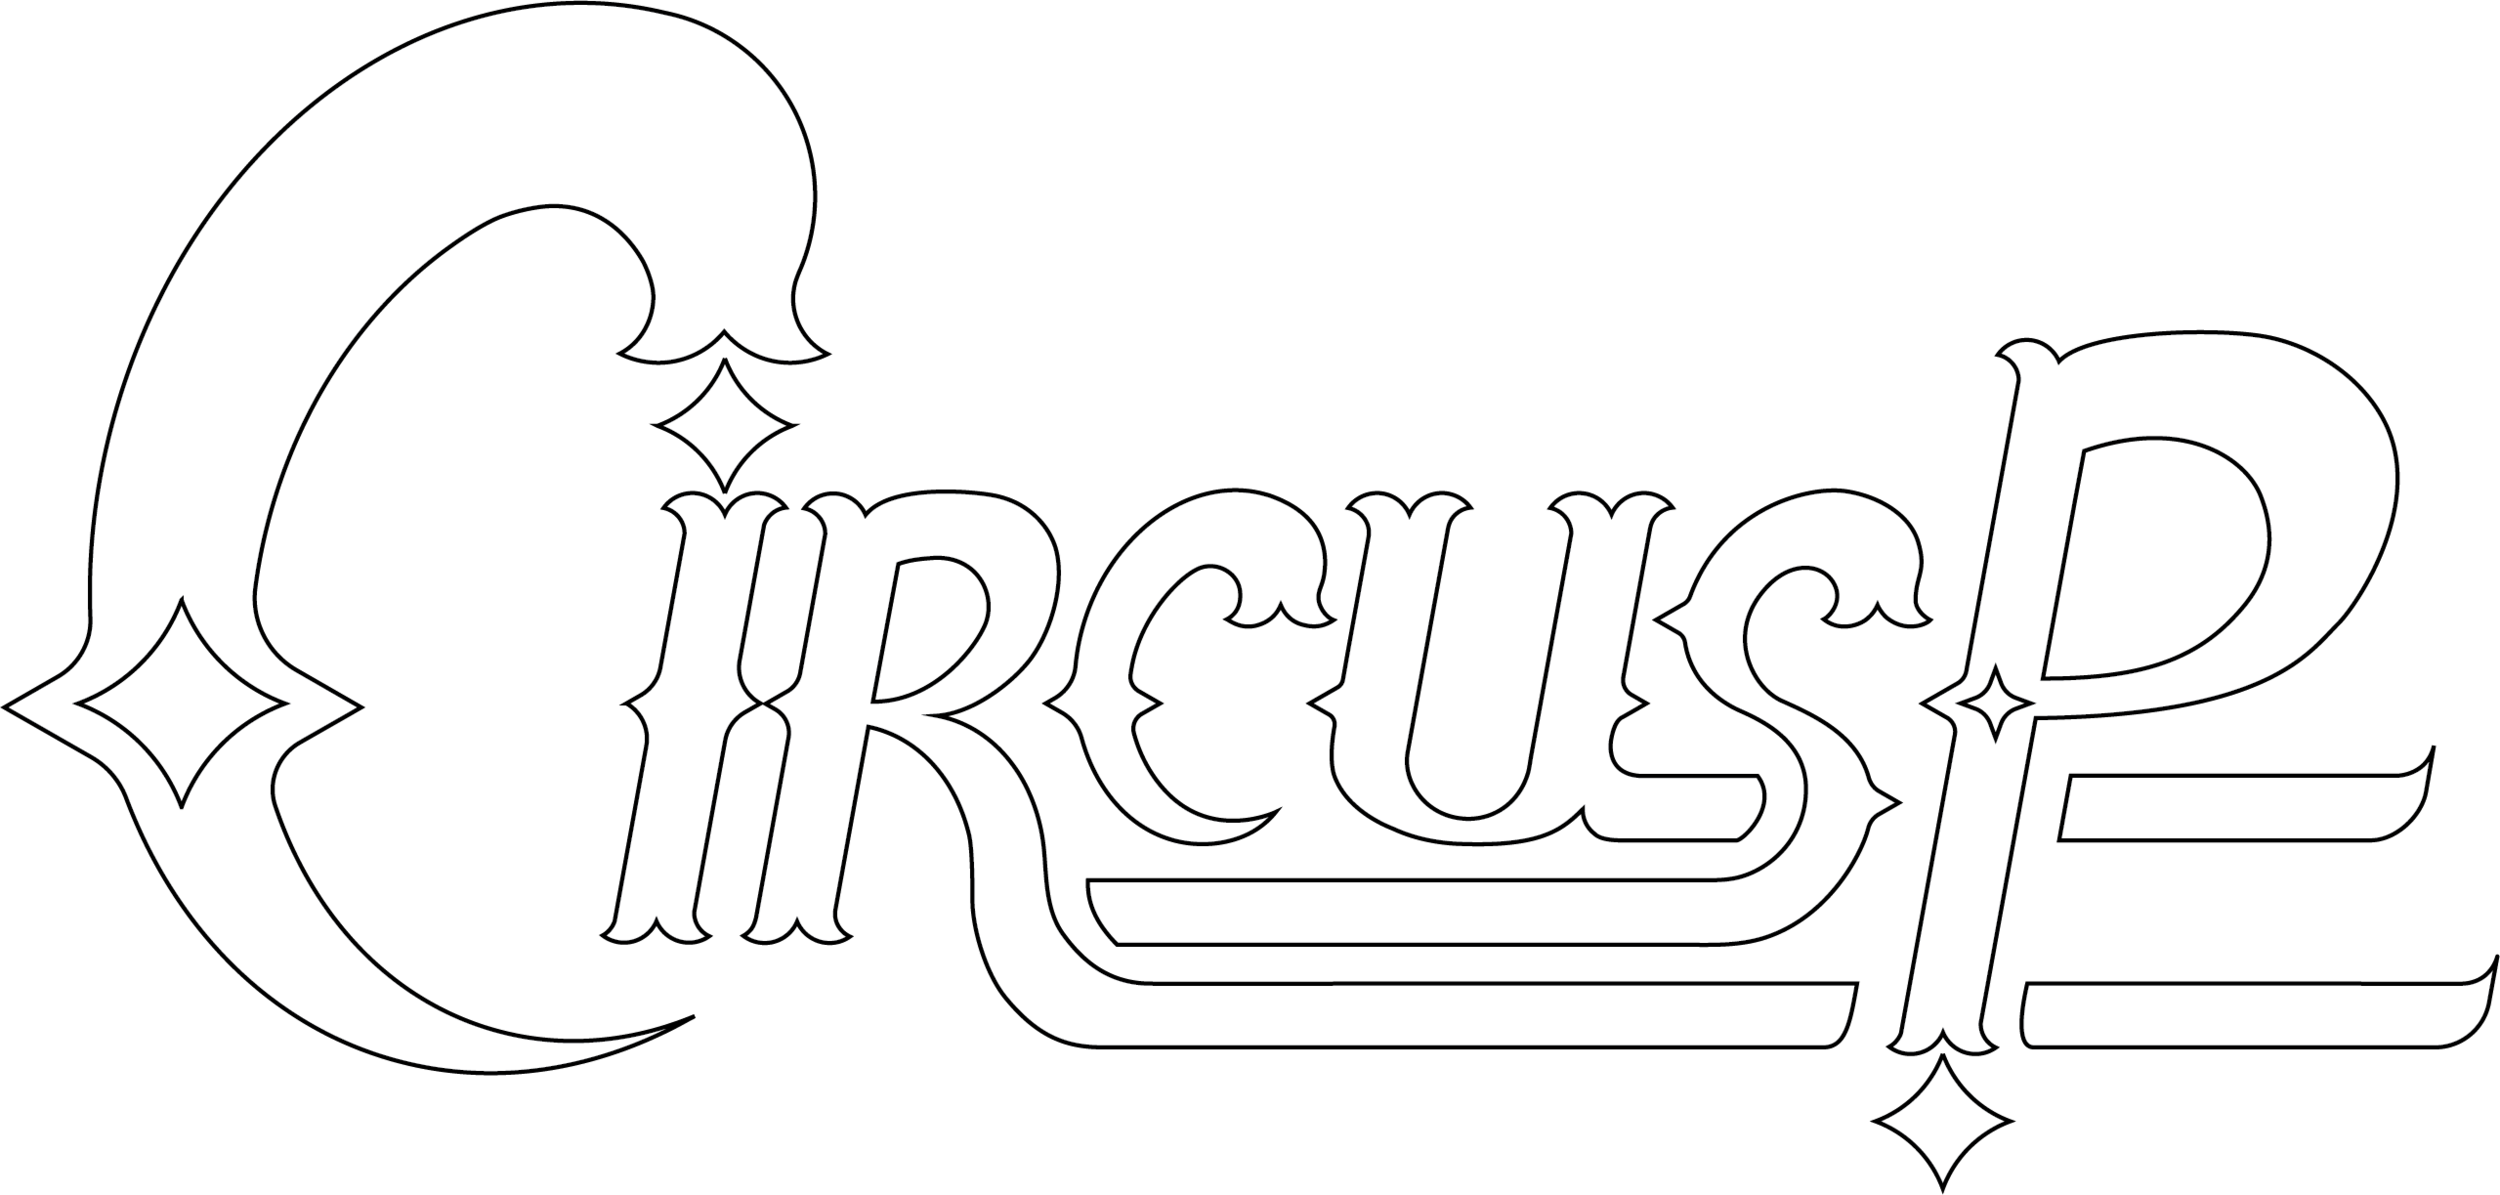 CircusP